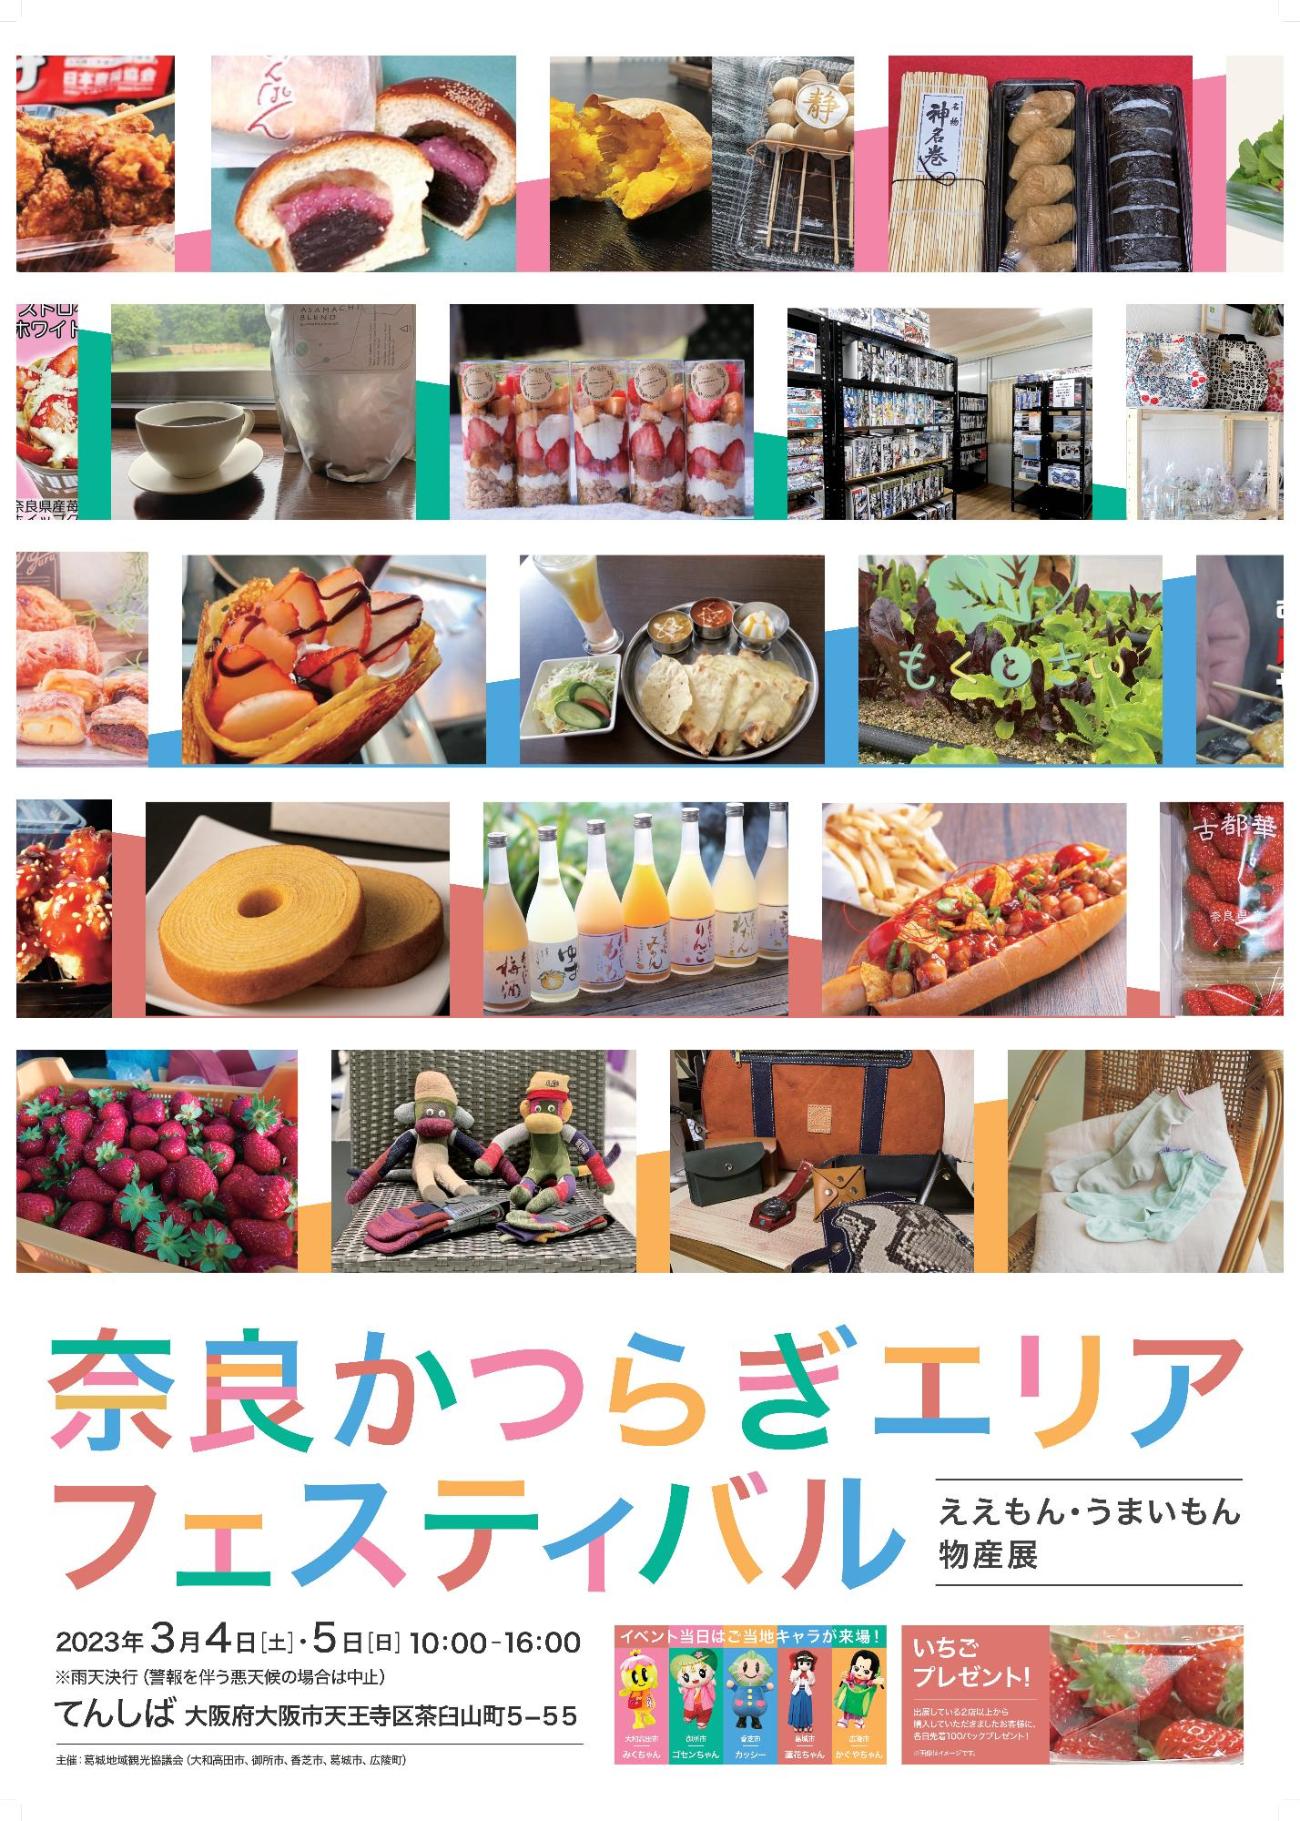 奈良かつらぎエリアフェスティバルのポスターです。出店するお店の写真を掲載しています。